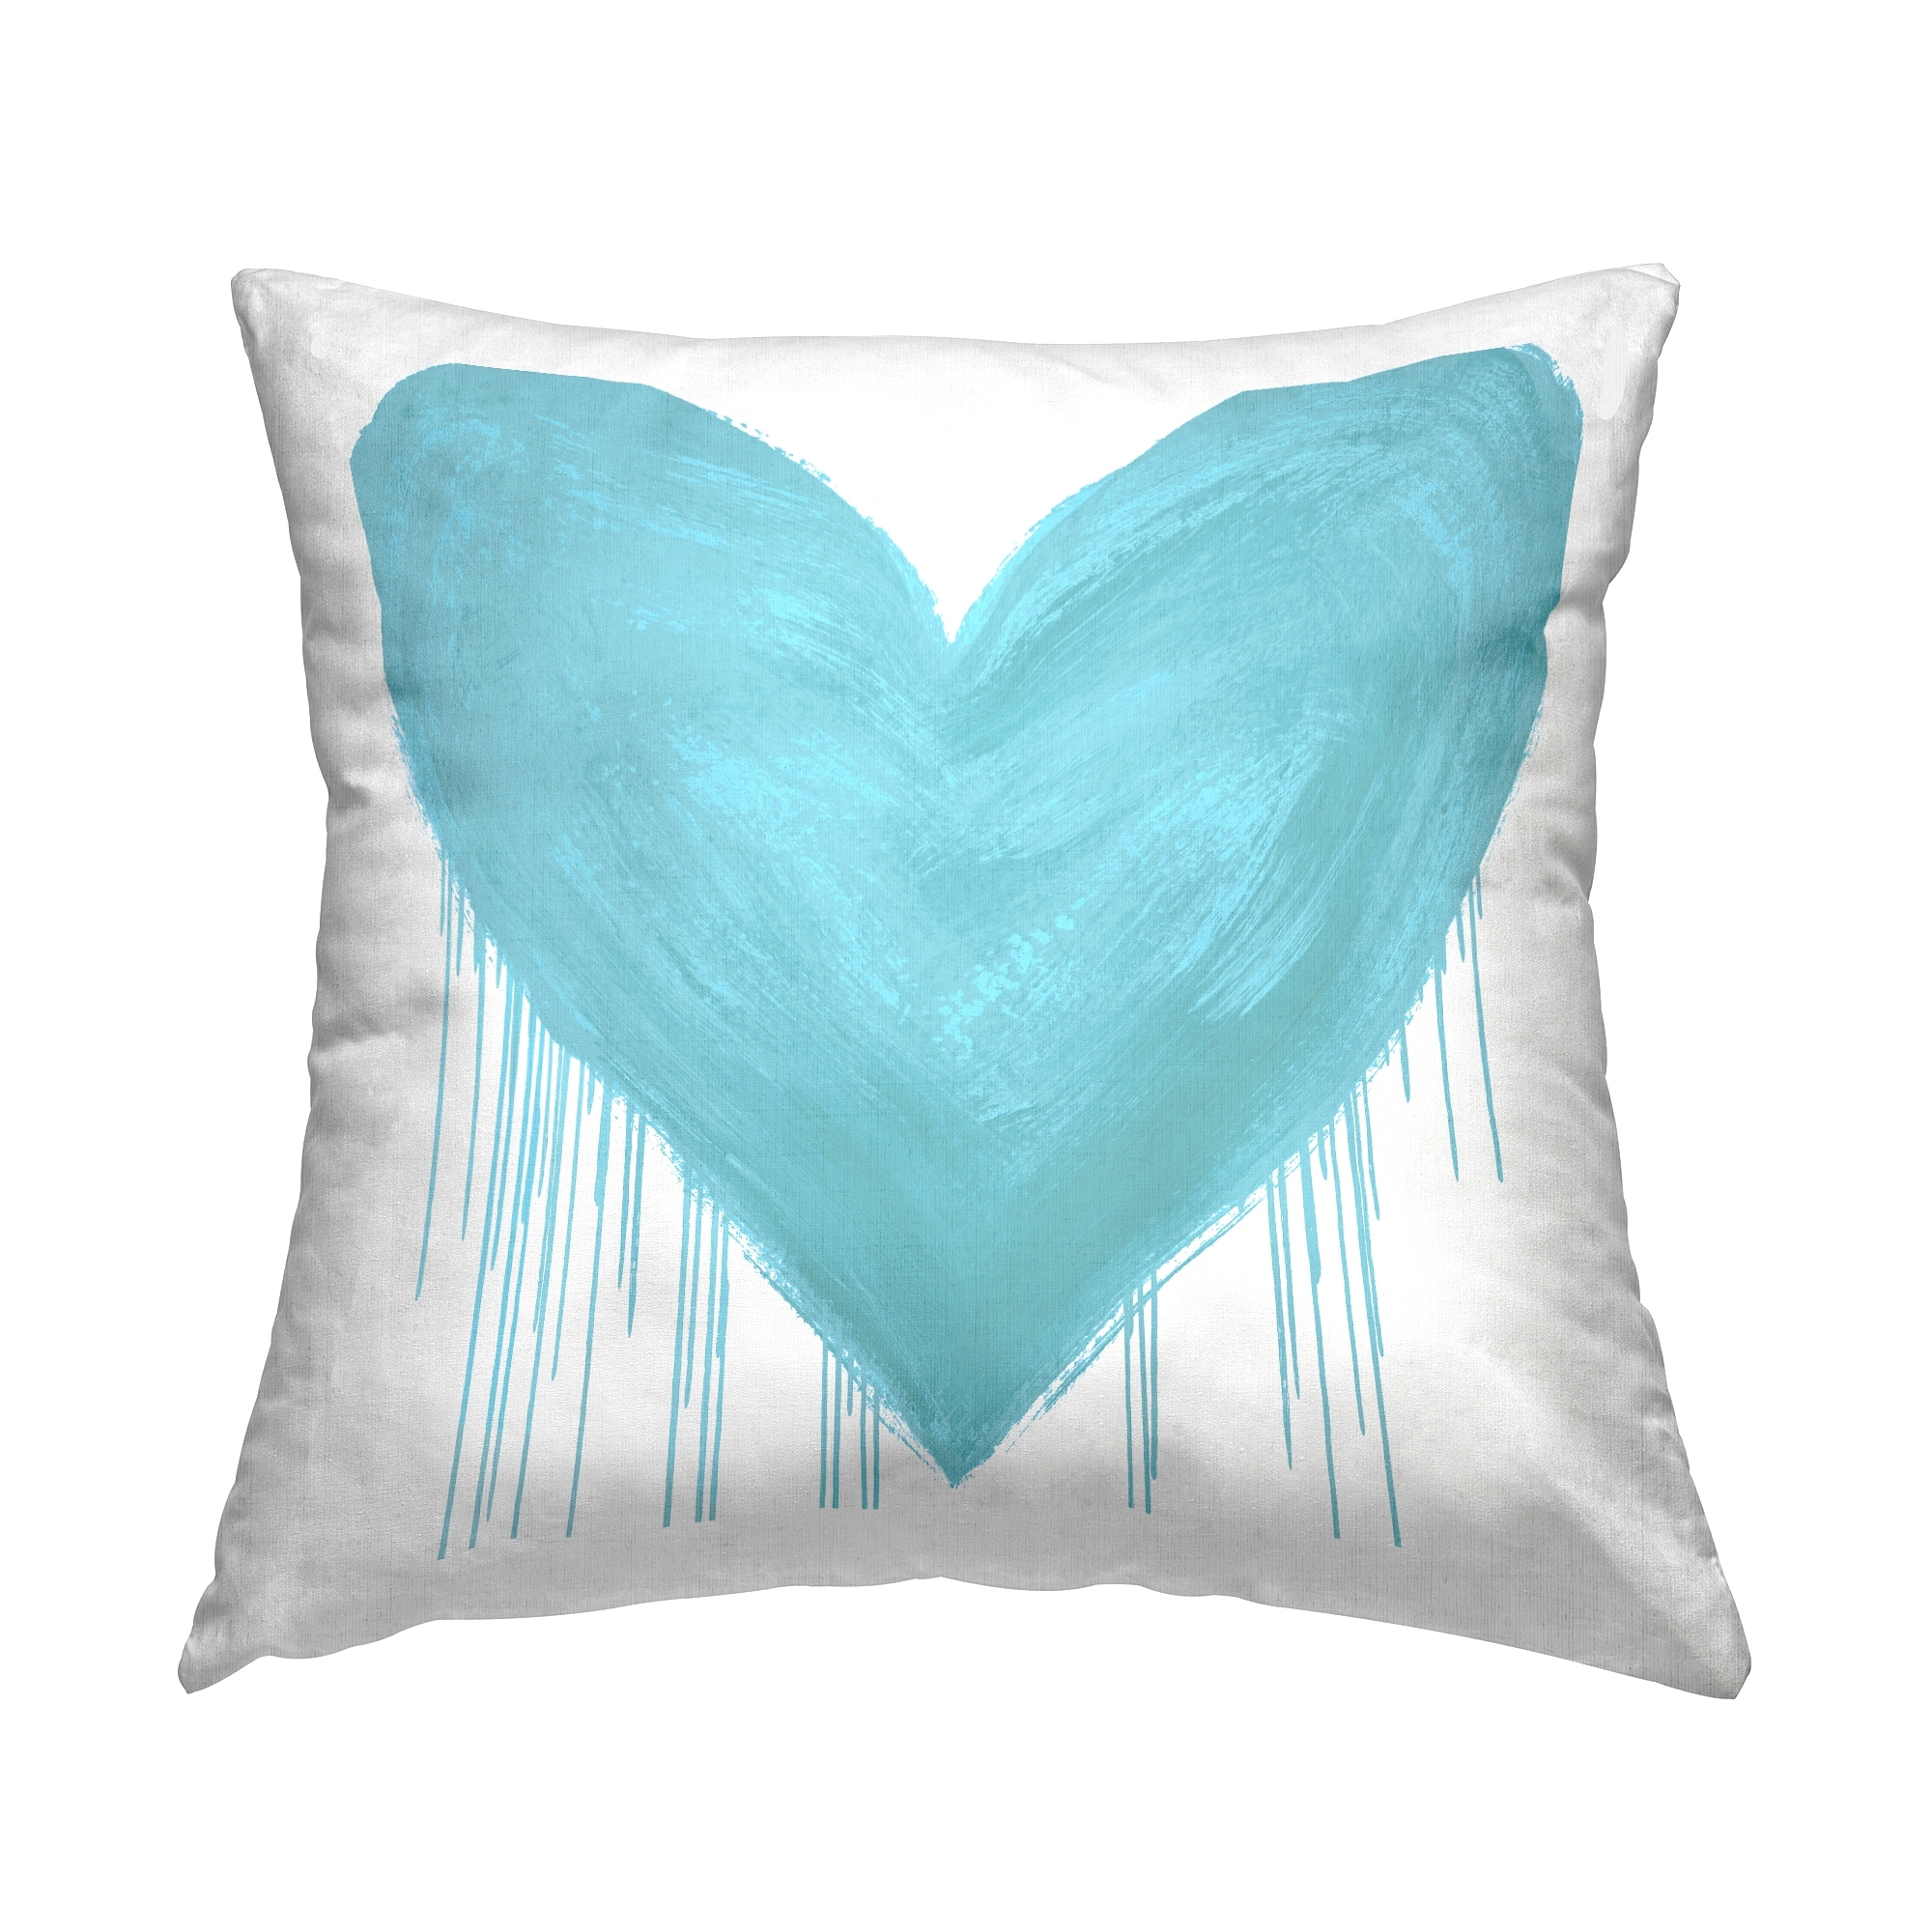 chanel logo pillows decorative throw pillows